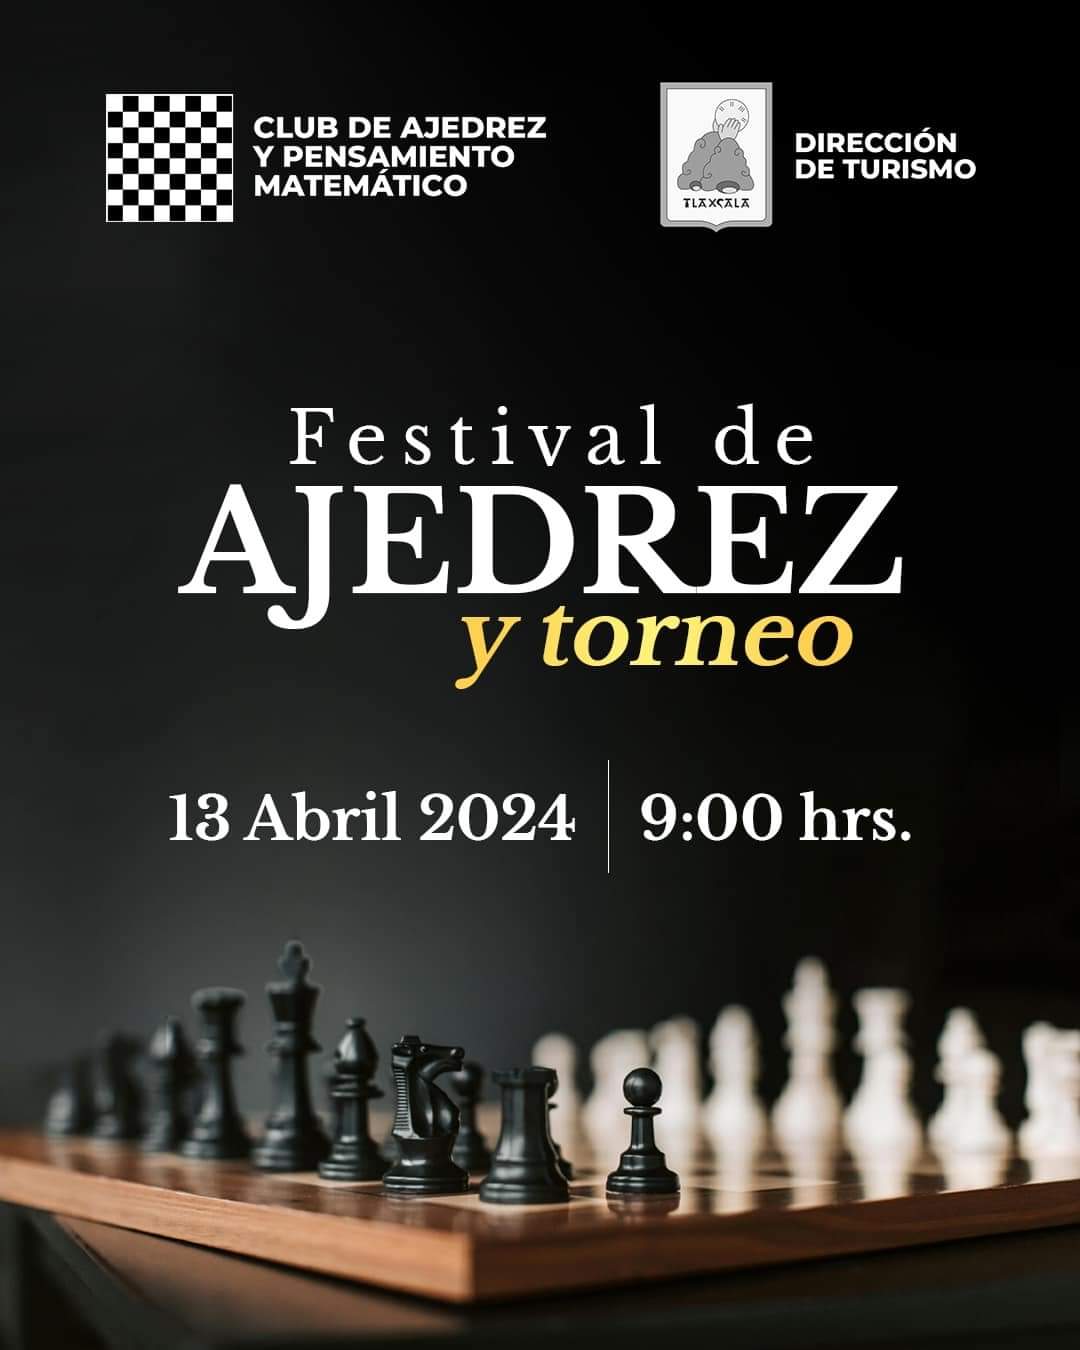 Habrá festival y torneo de Ajedrez en la Capital